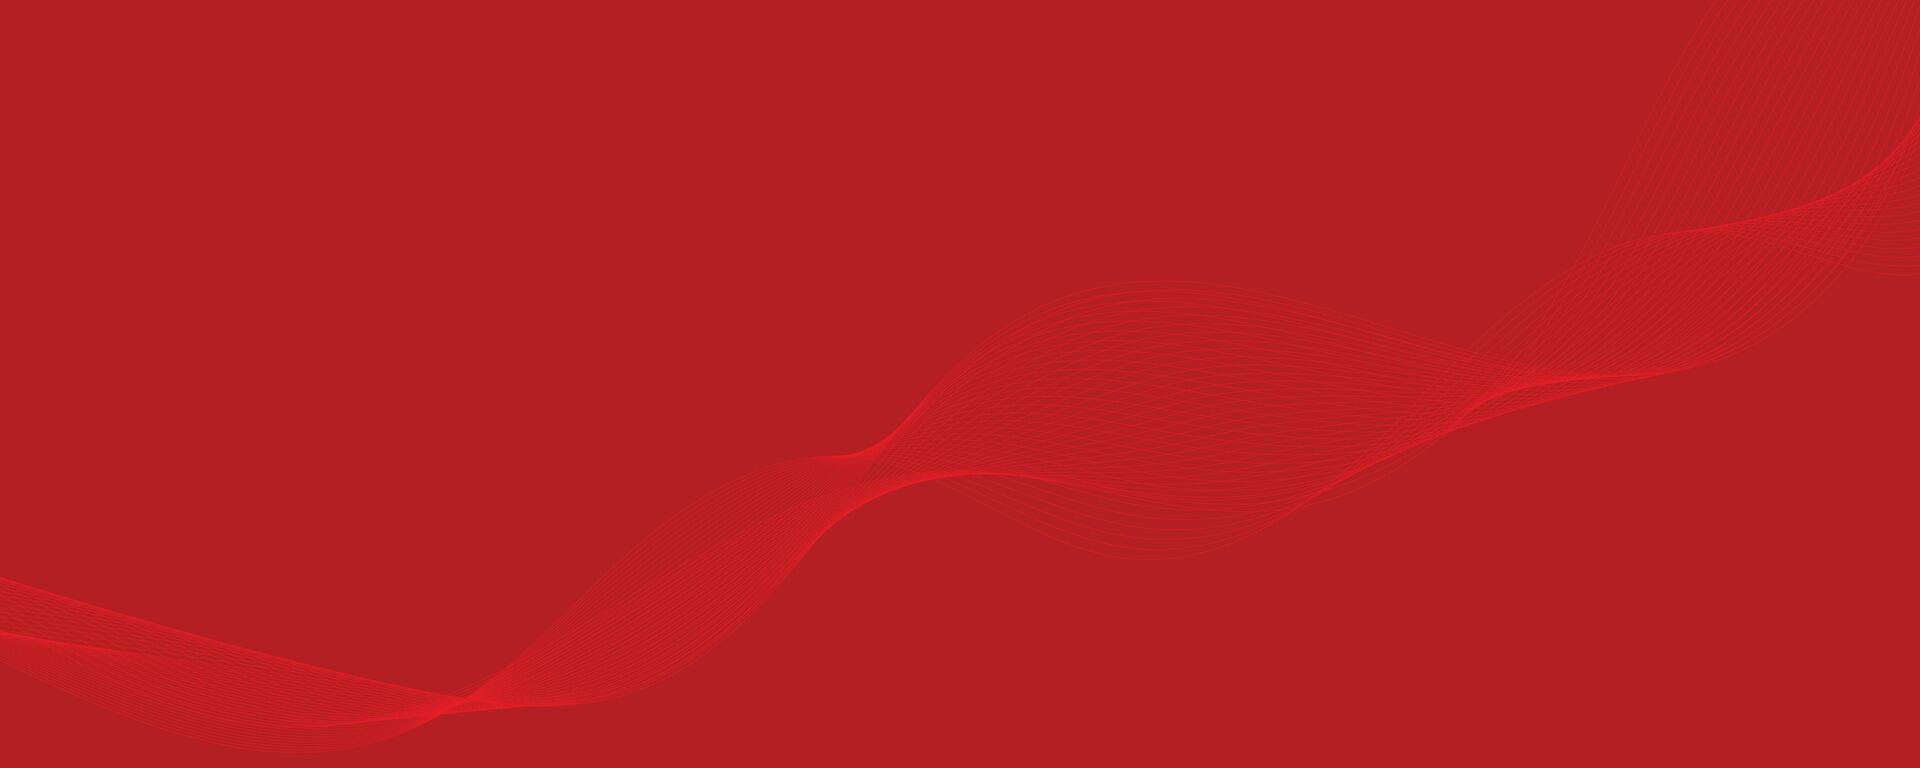 vector abstract rood achtergrond met dynamisch rood golven, lijnen en deeltjes